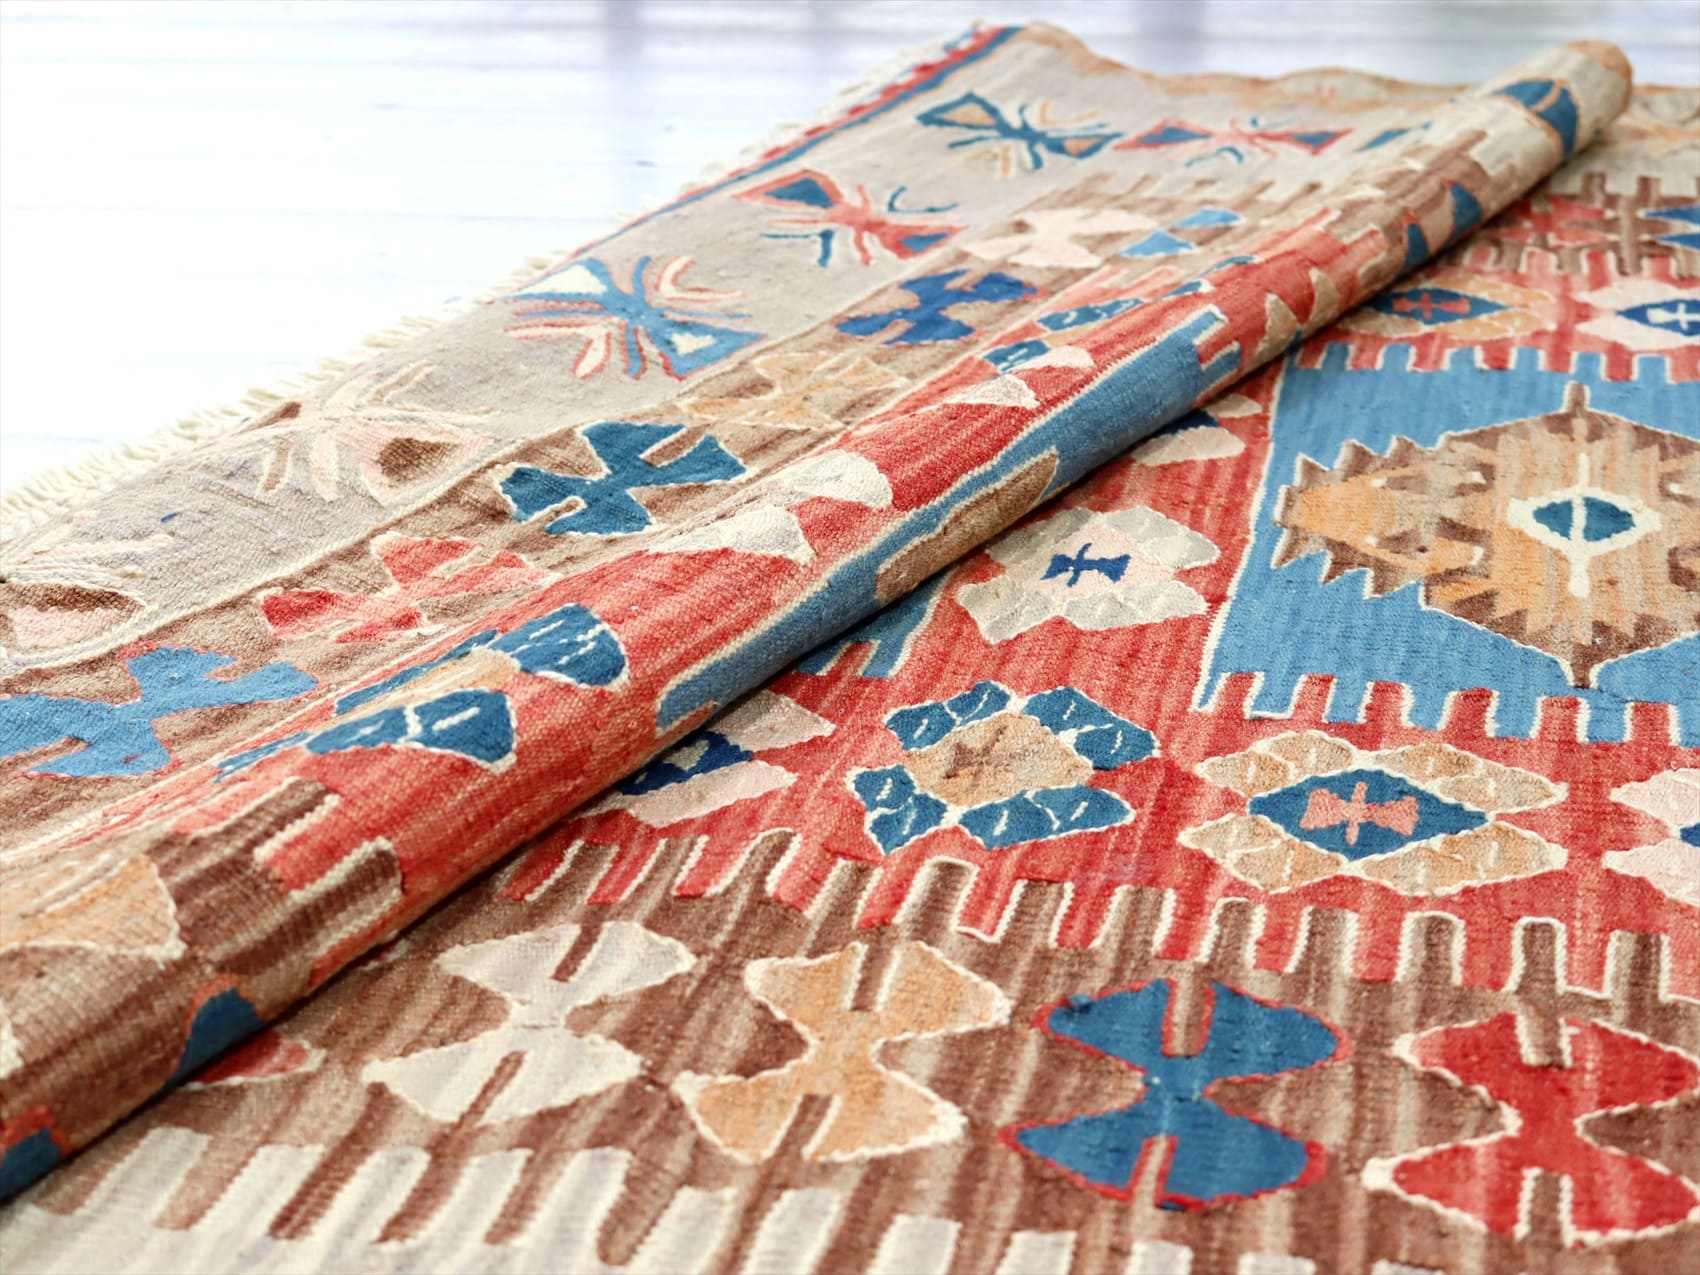 細かな織りのコンヤキリム・セッヂャーデ174×133cm エリベリンデのモチーフ ガラタバザール